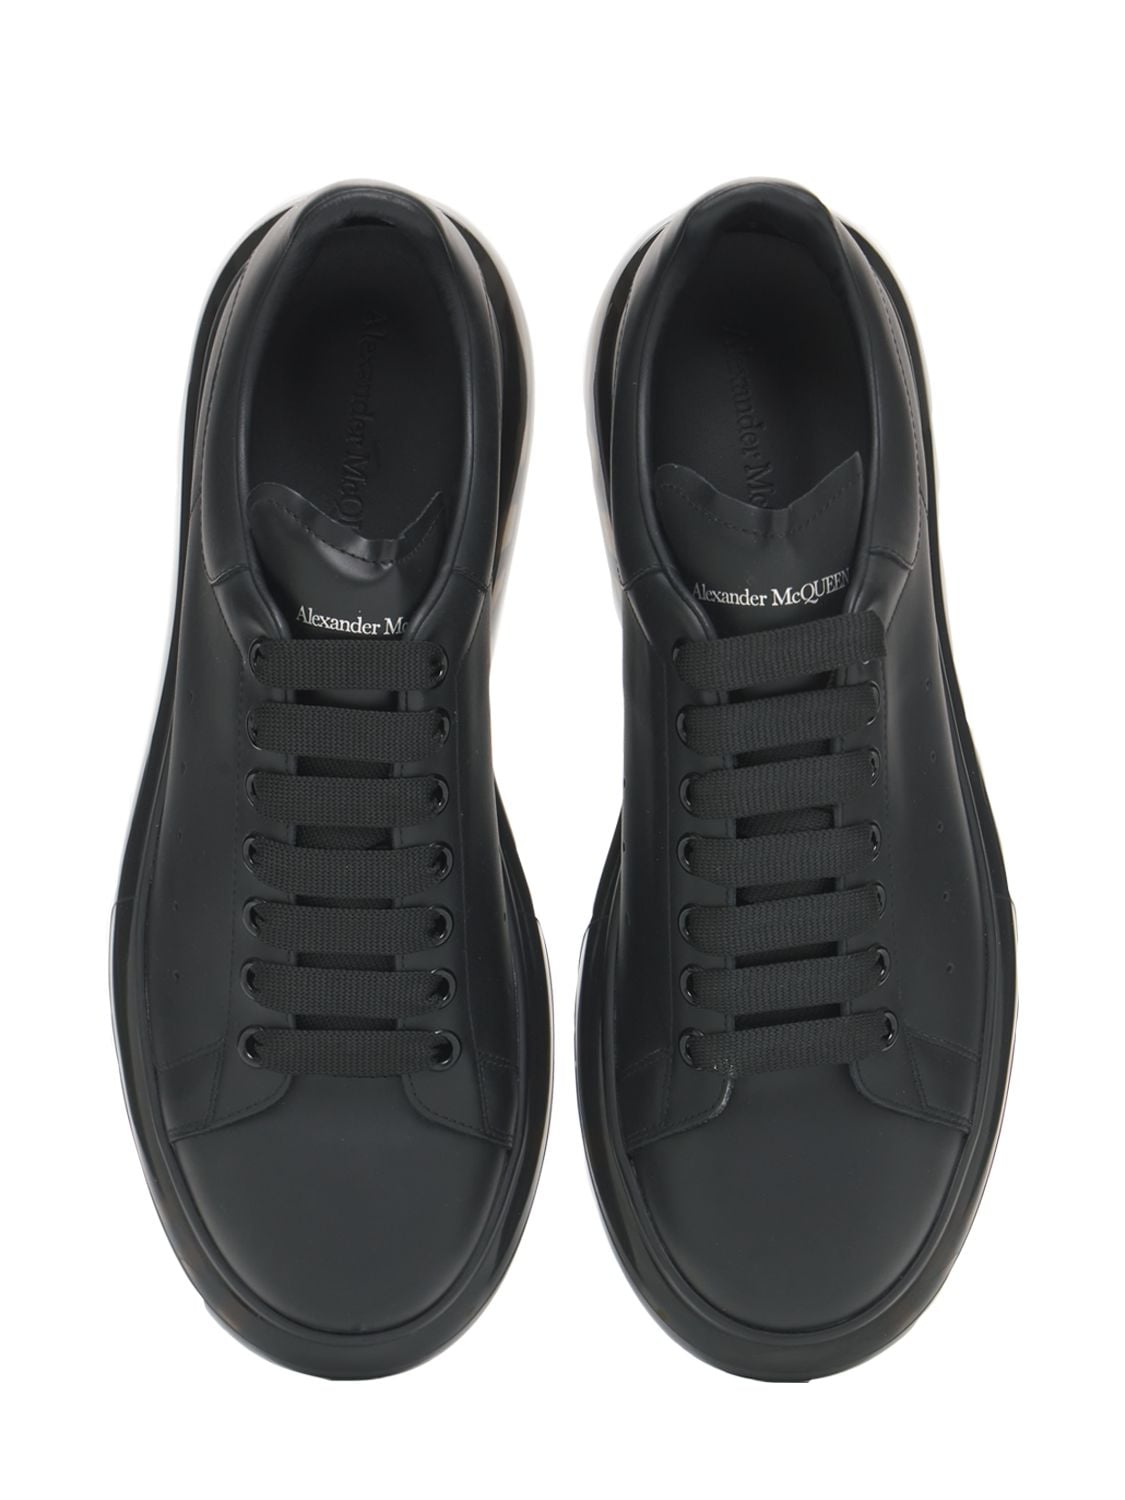 Shop Alexander Mcqueen 45mm Oversized Leather Sneakers In Black